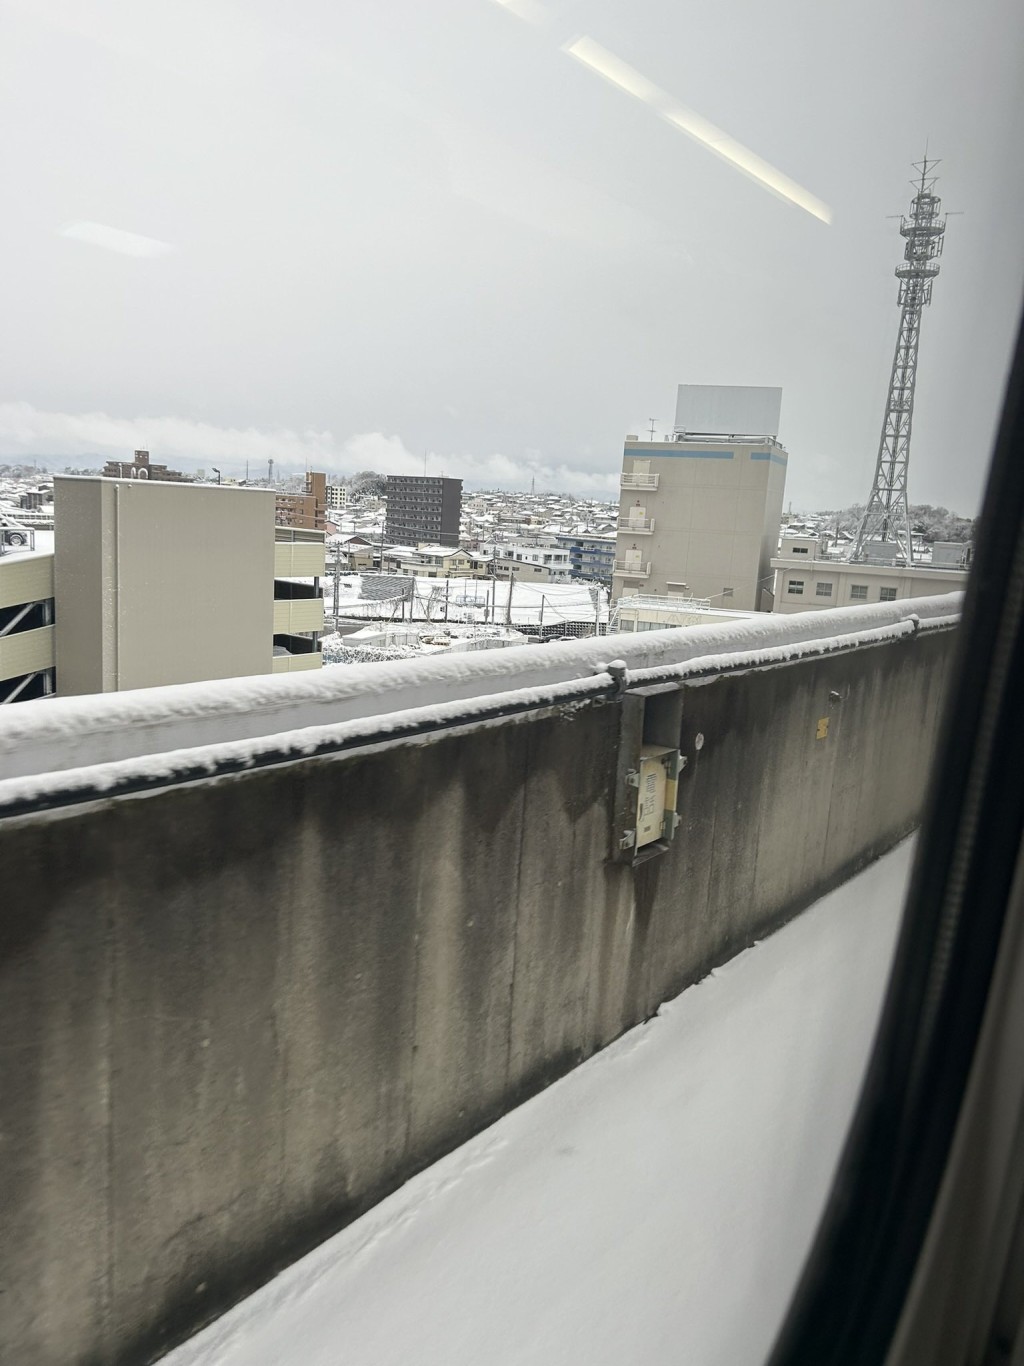 新幹線「翼121號」停在路軌中央，可見路上有積雪。 X